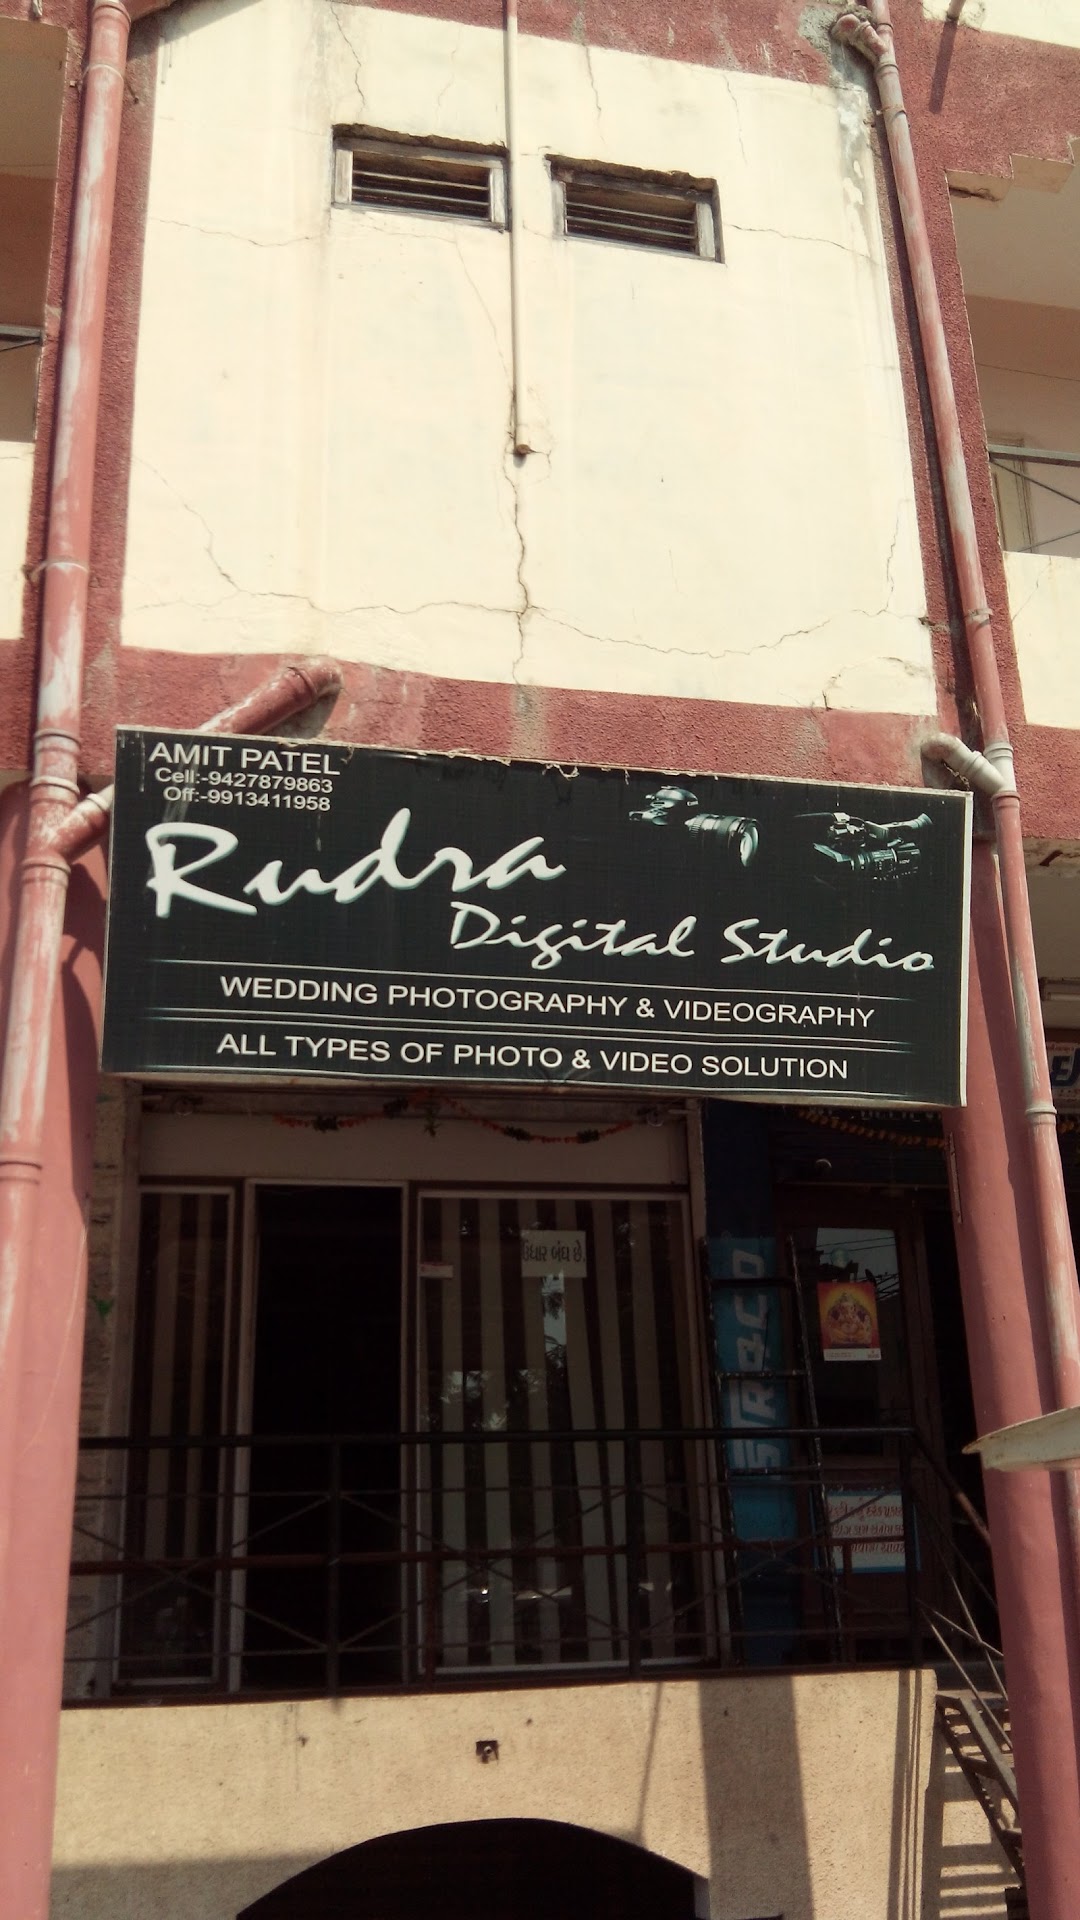 Rudra Digital Studio